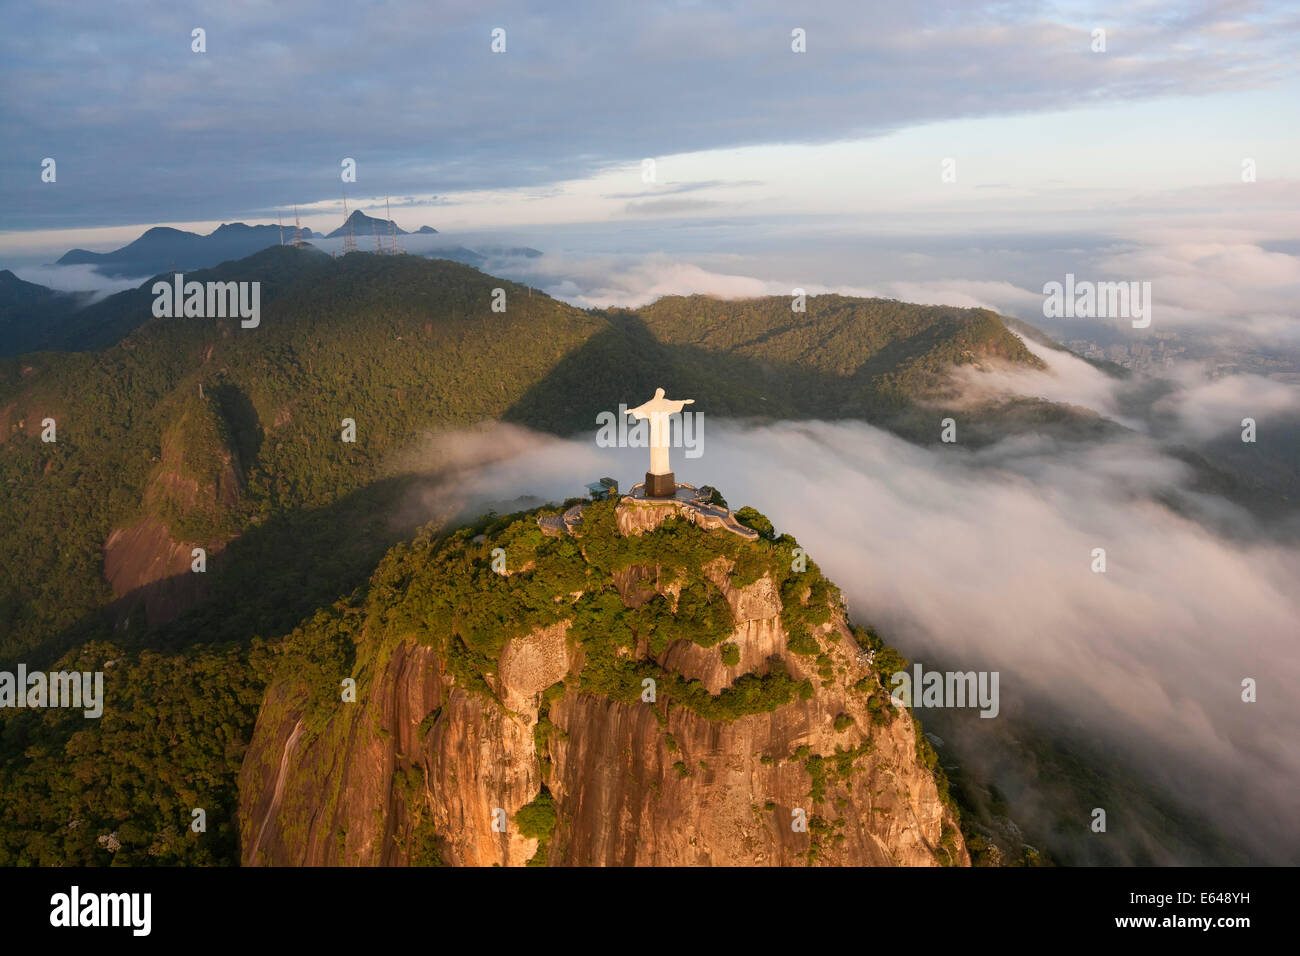 Die riesigen Art-Deco-Statue Jesus Cristo Redentor (Christus Erlöser) auf dem Berg Corcovado in Rio De Janeiro Brasilien genannt. Stockfoto